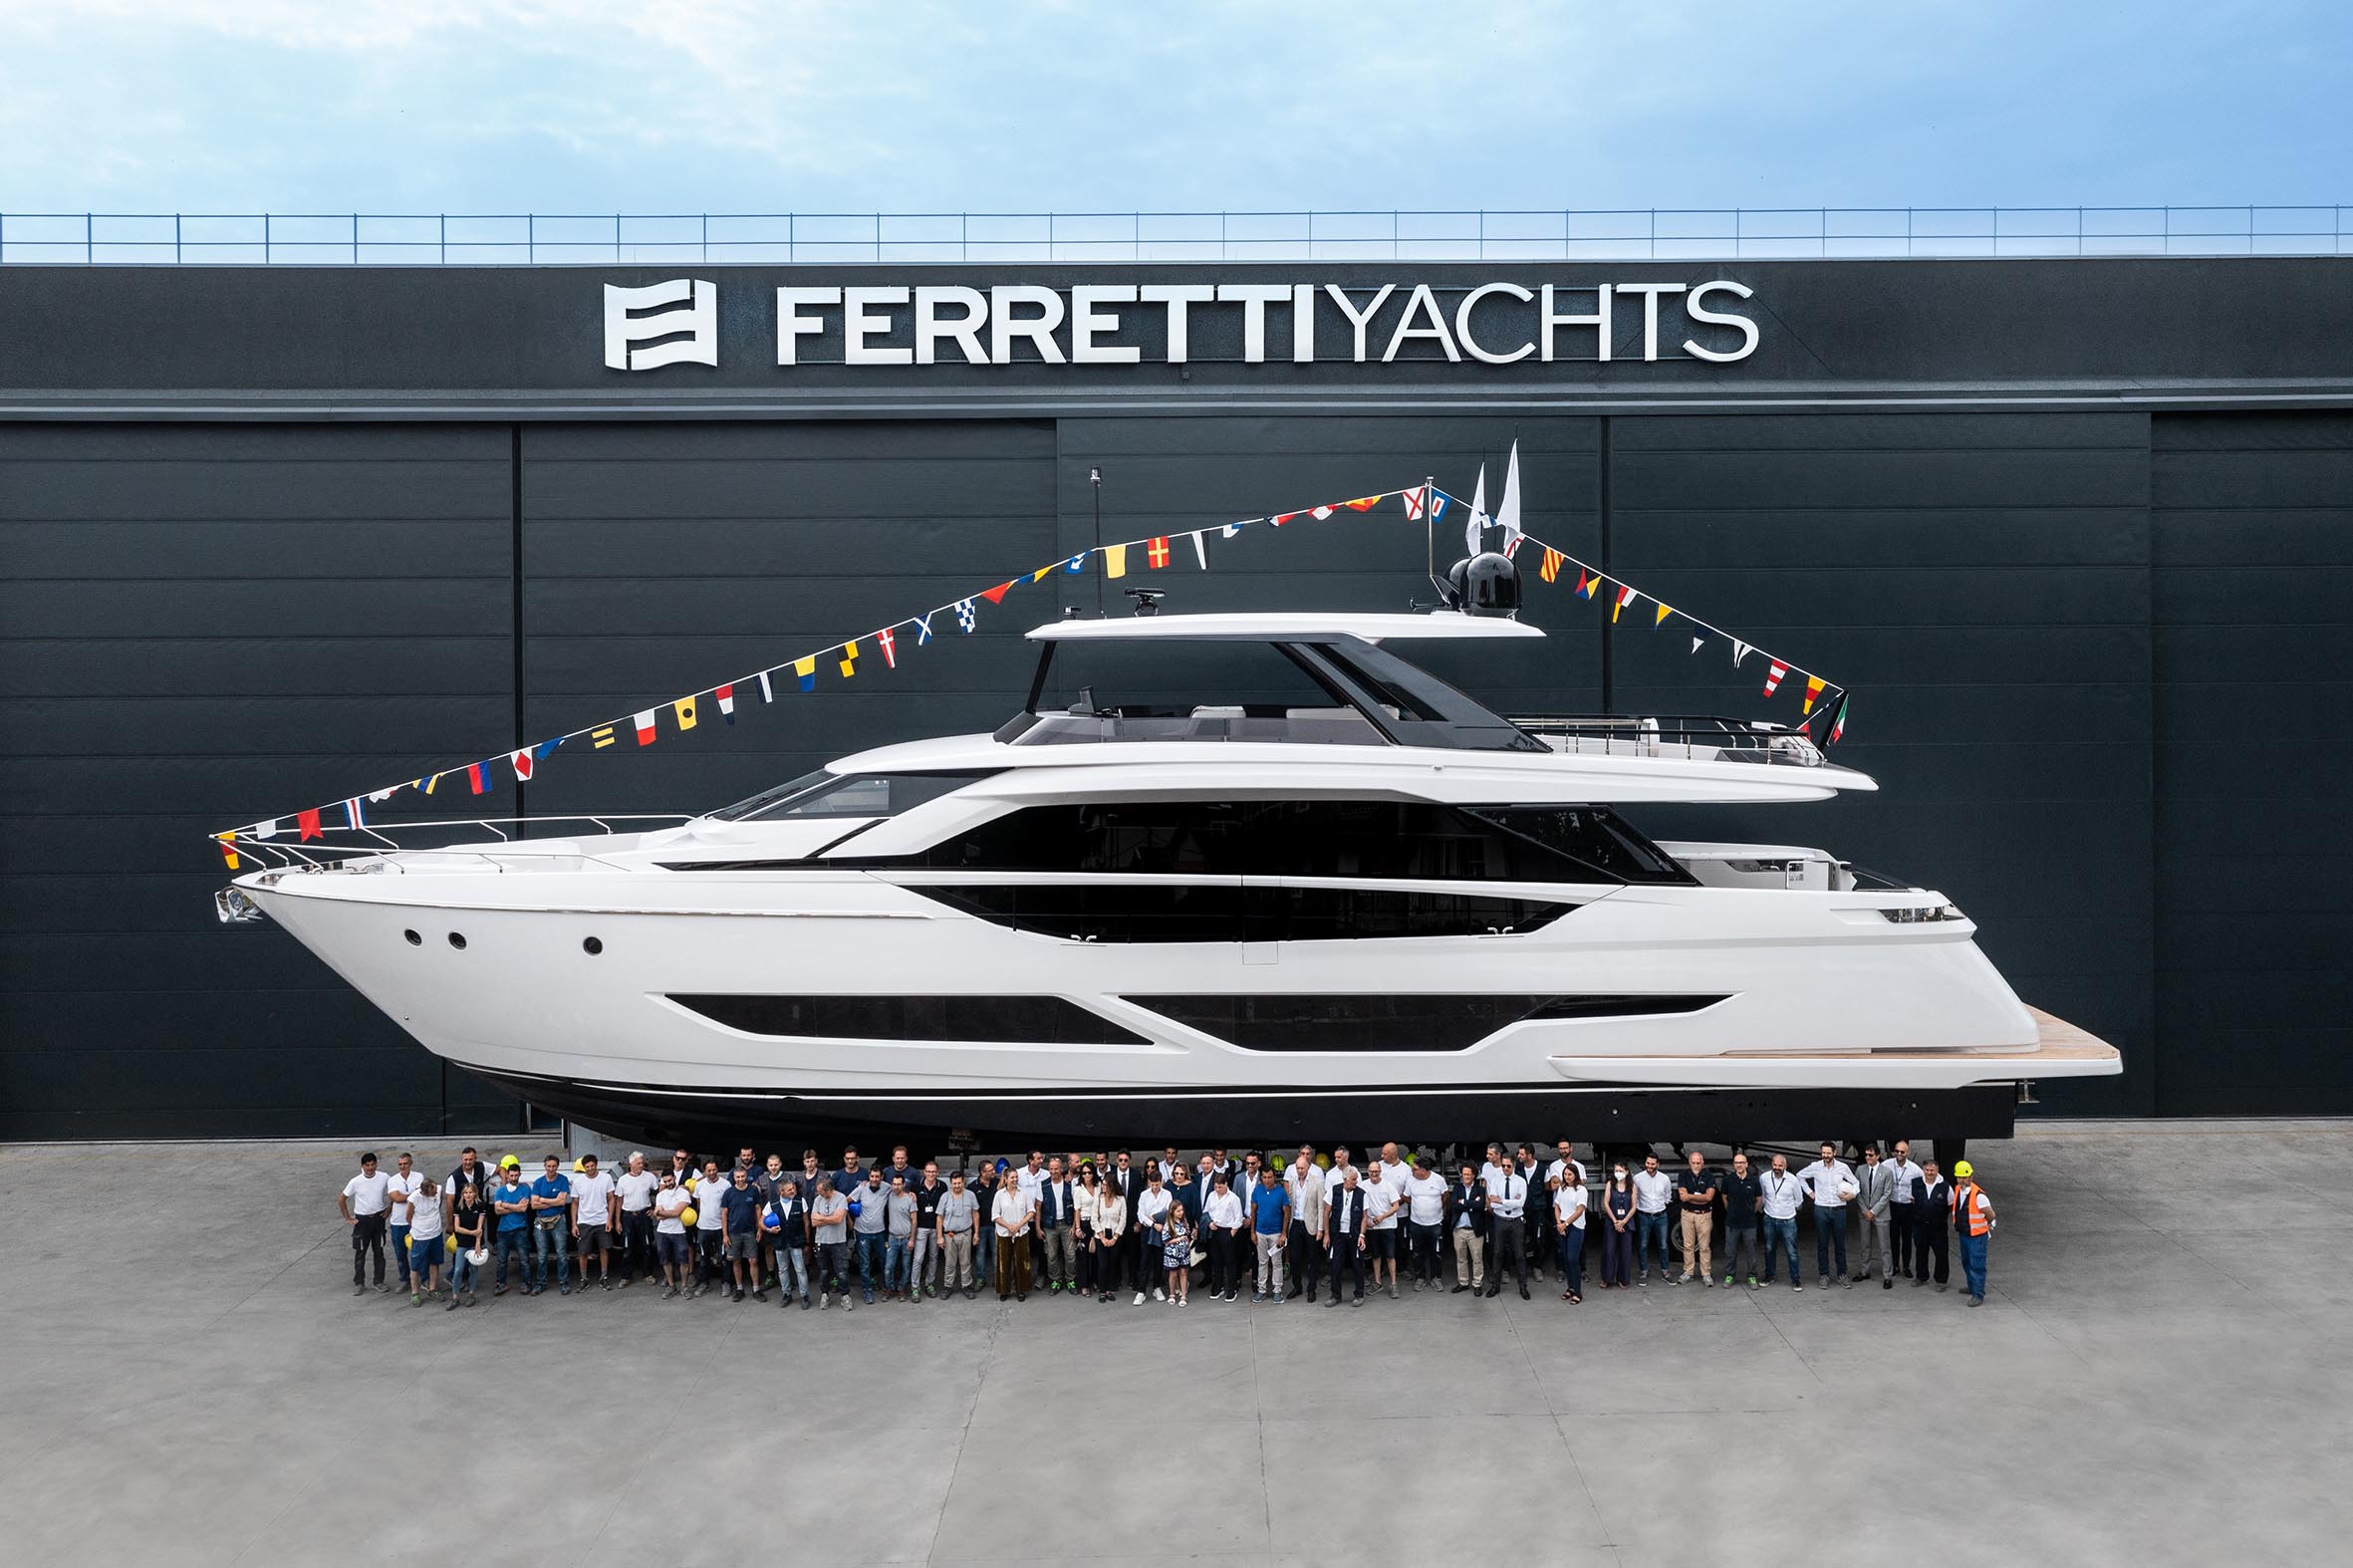 ferretti yachts instagram